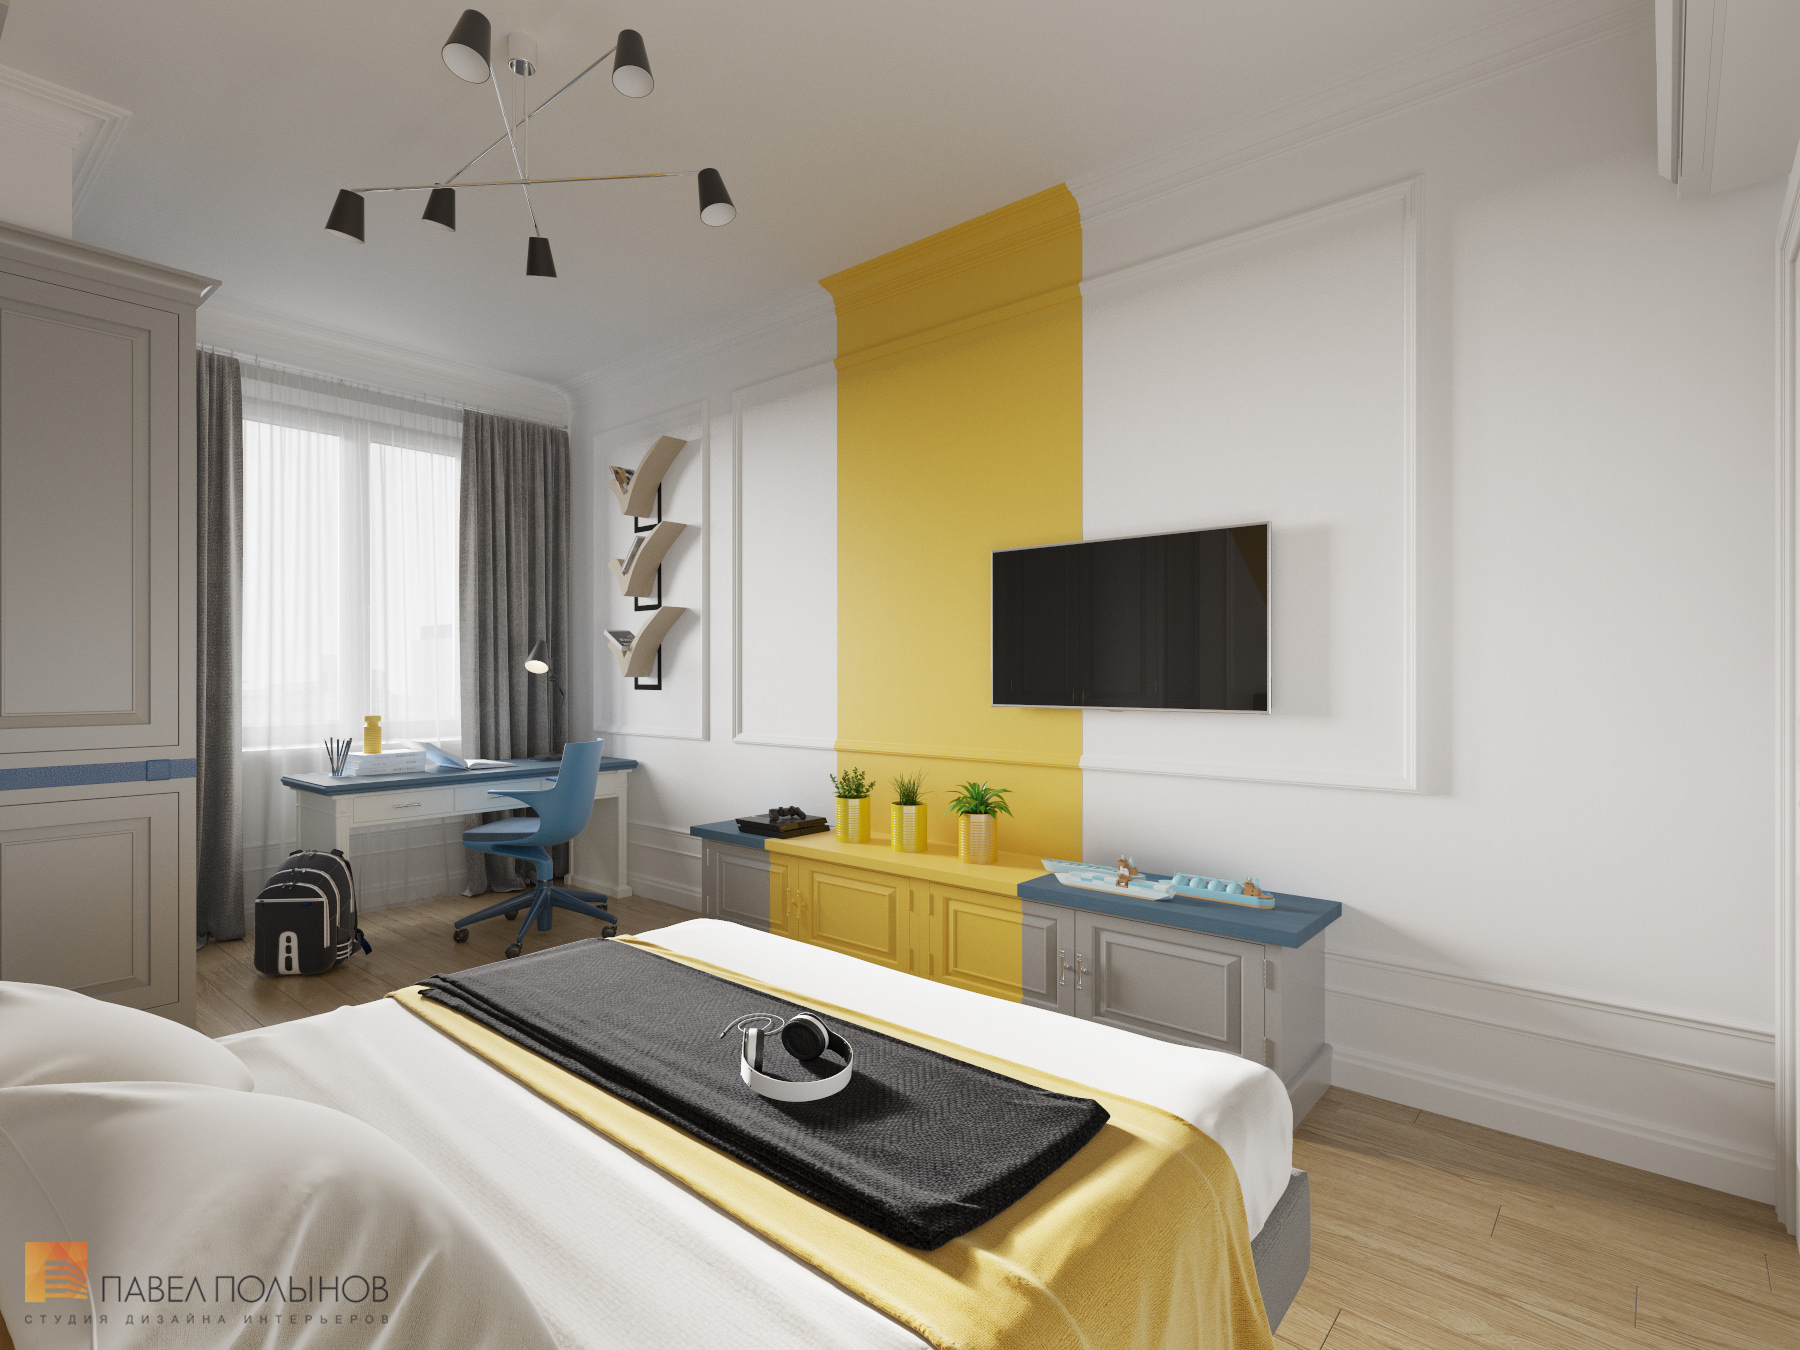 Фото дизайн детской комнаты из проекта «Интерьер квартиры в стиле неоклассики, ЖК «Парадный квартал», 190 кв.м.»